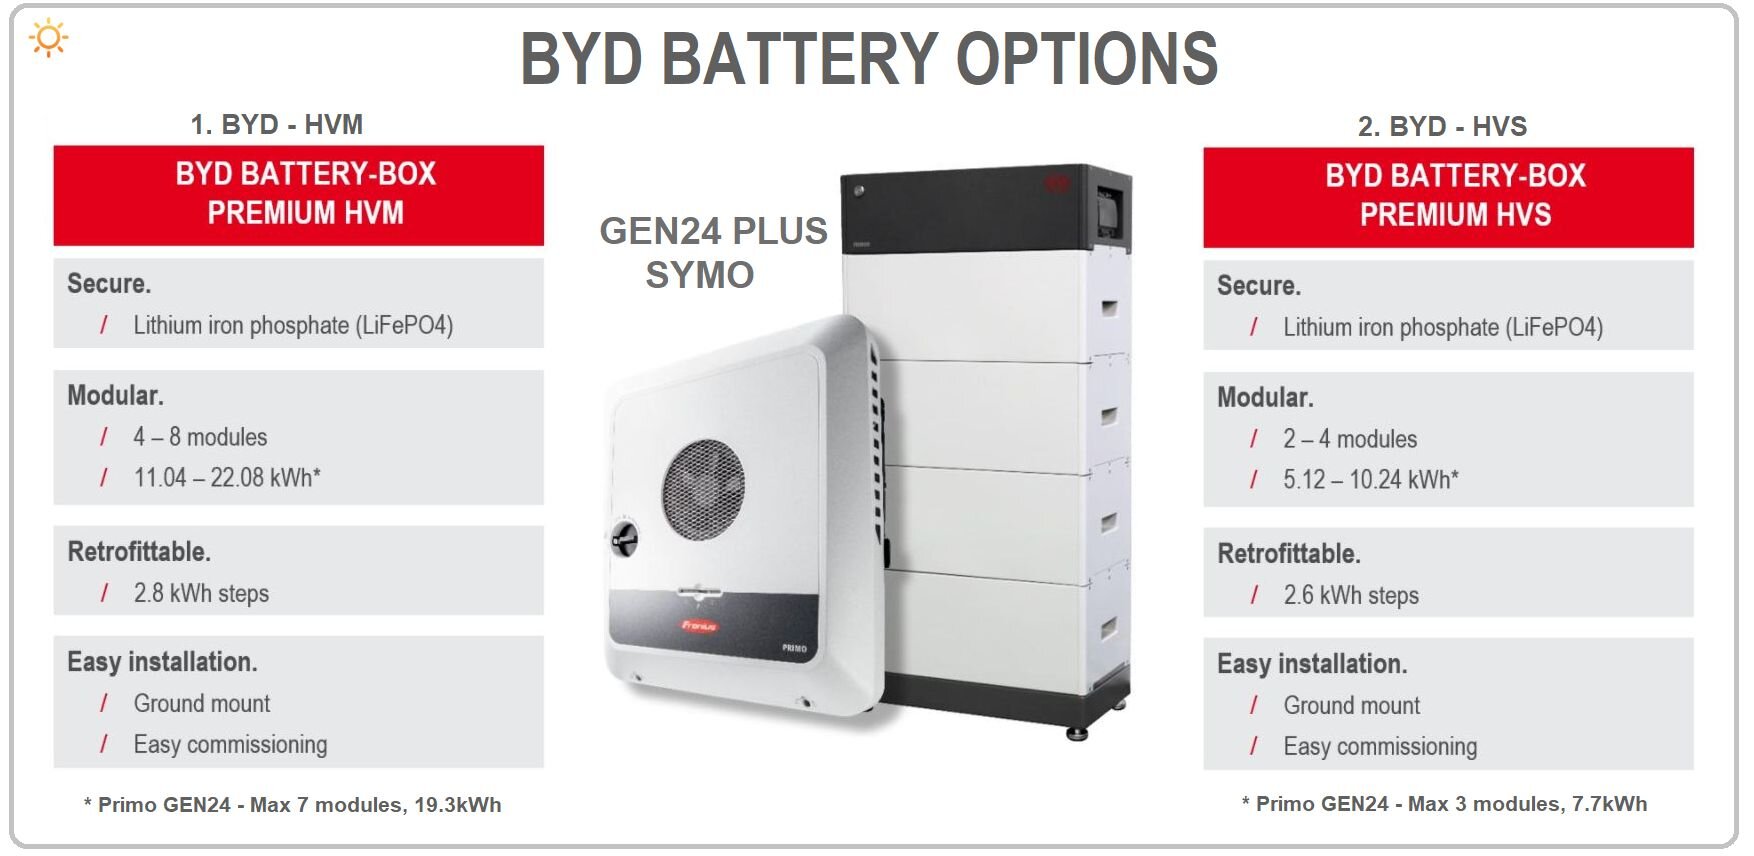 GEN24目前只兼容比亚迪HVM和HVS电池。